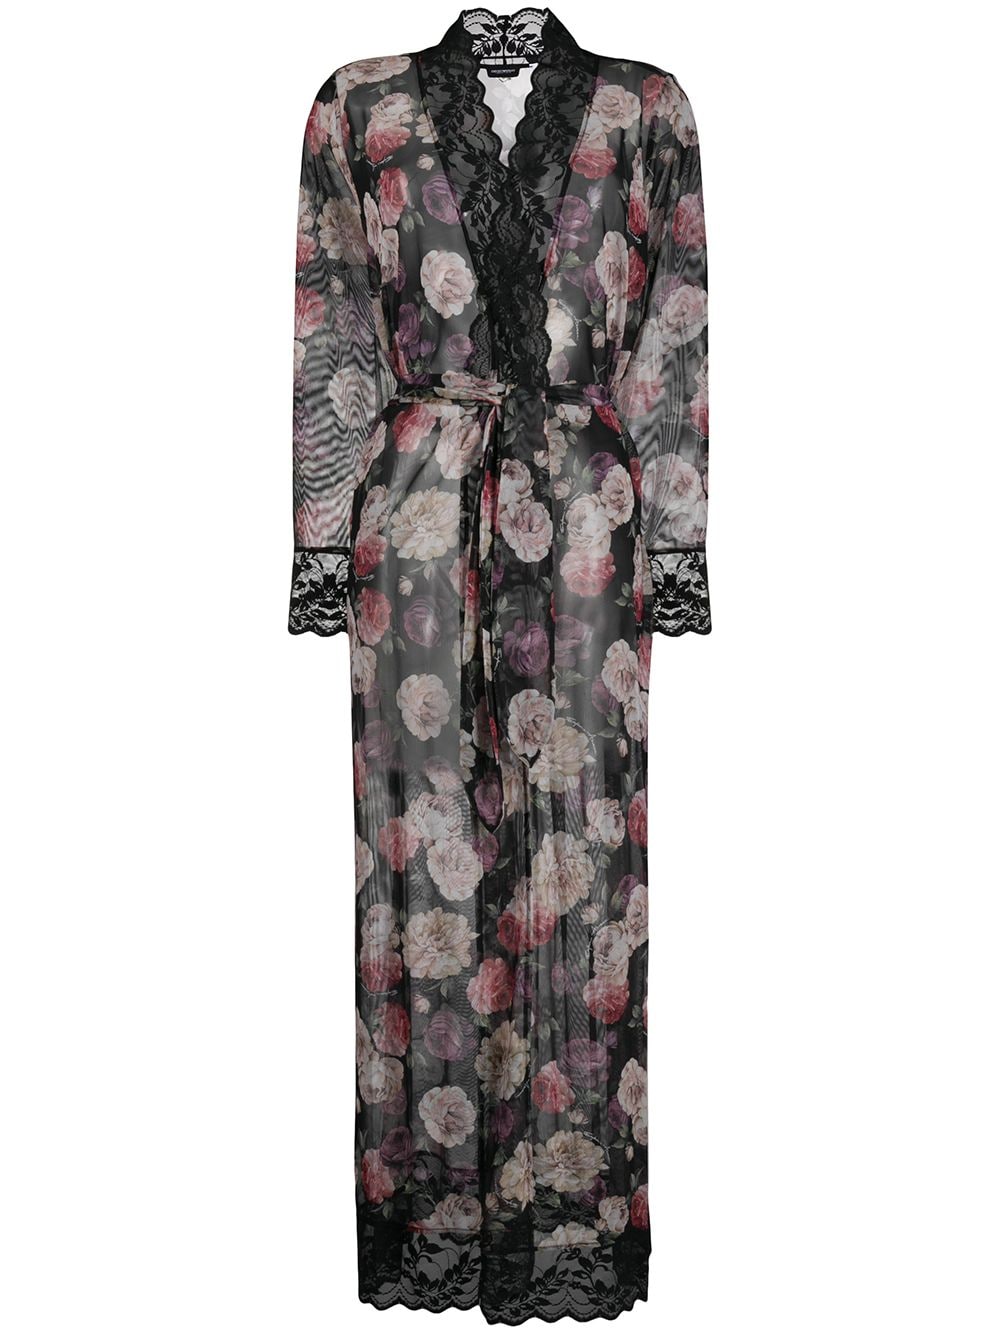 фото Emporio armani прозрачный халат с цветочным принтом